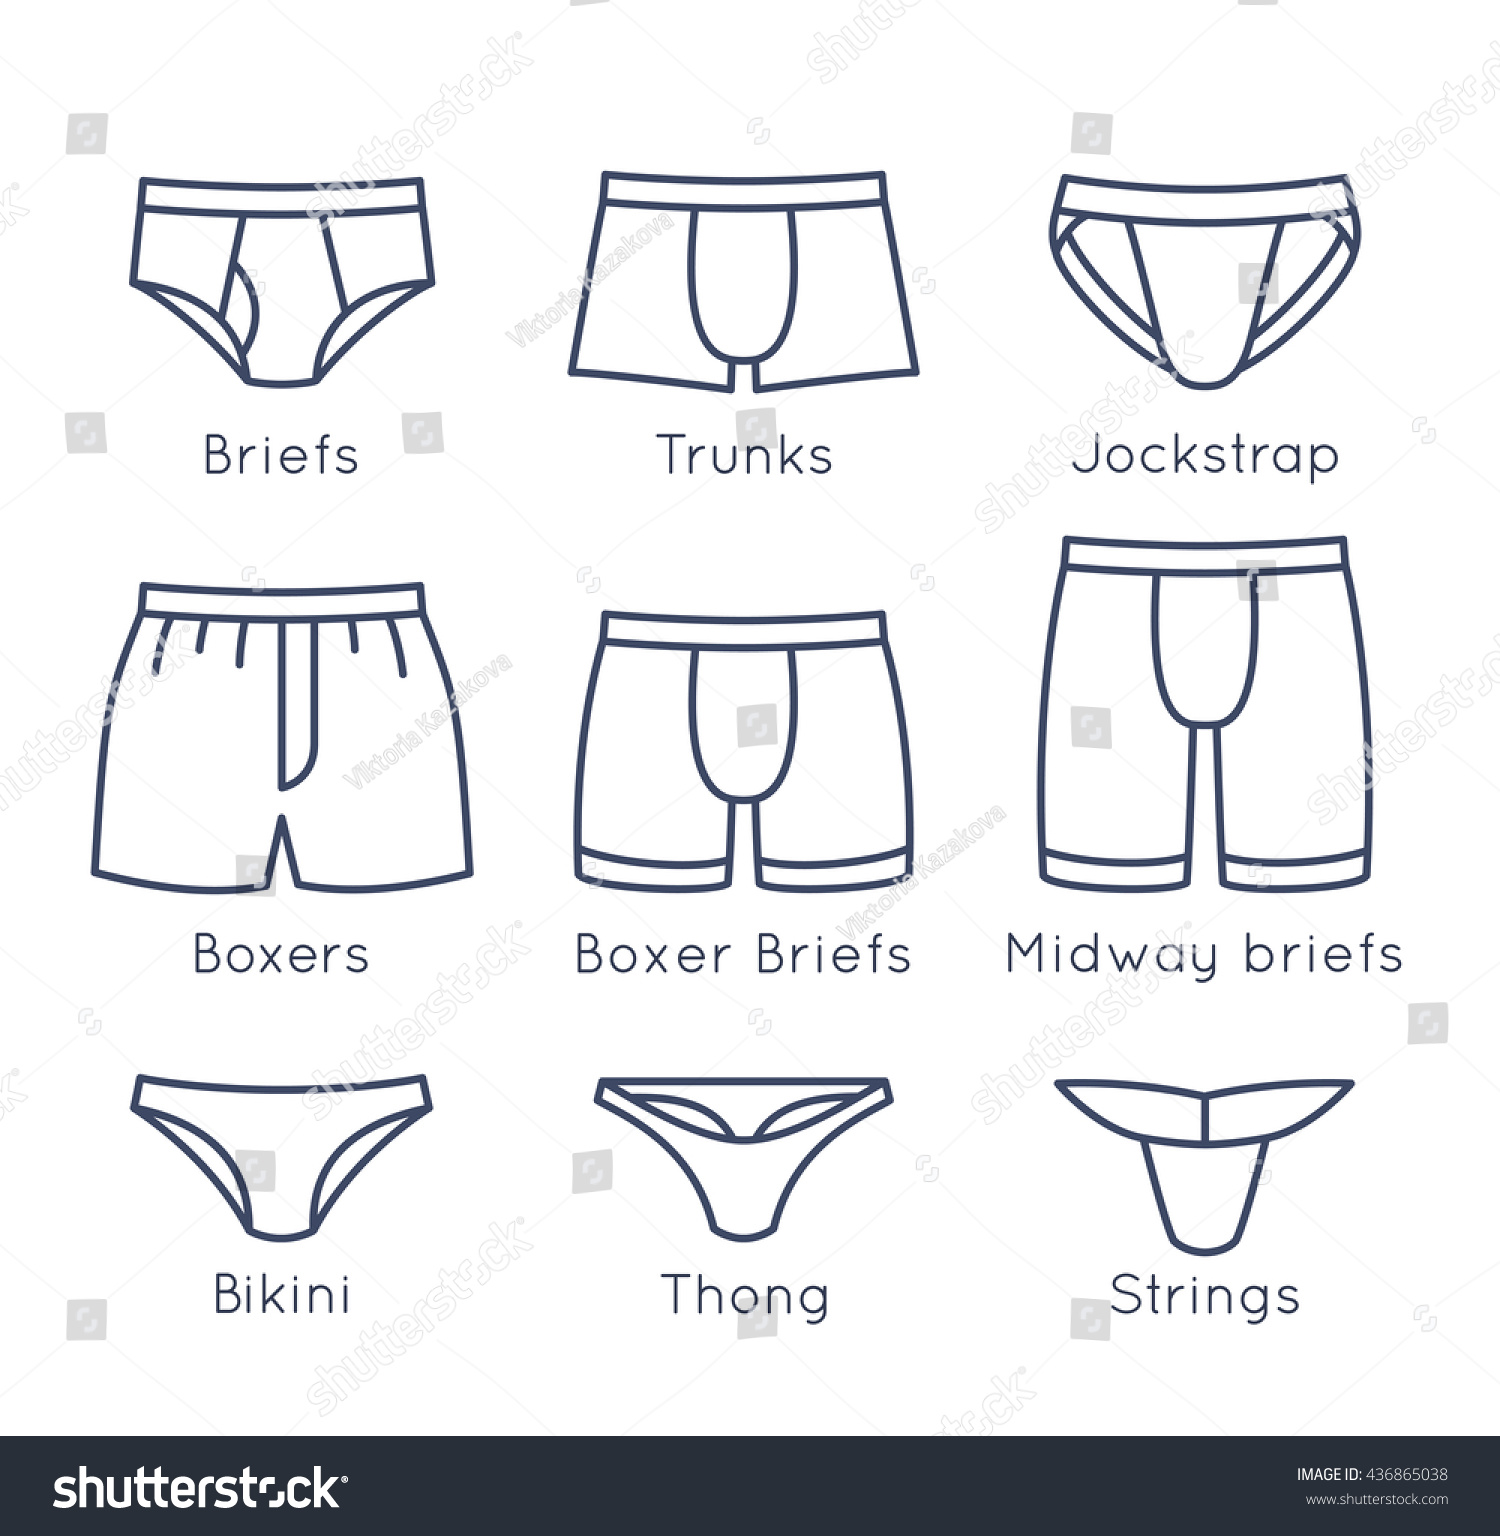 Men's Underwear Styles Types